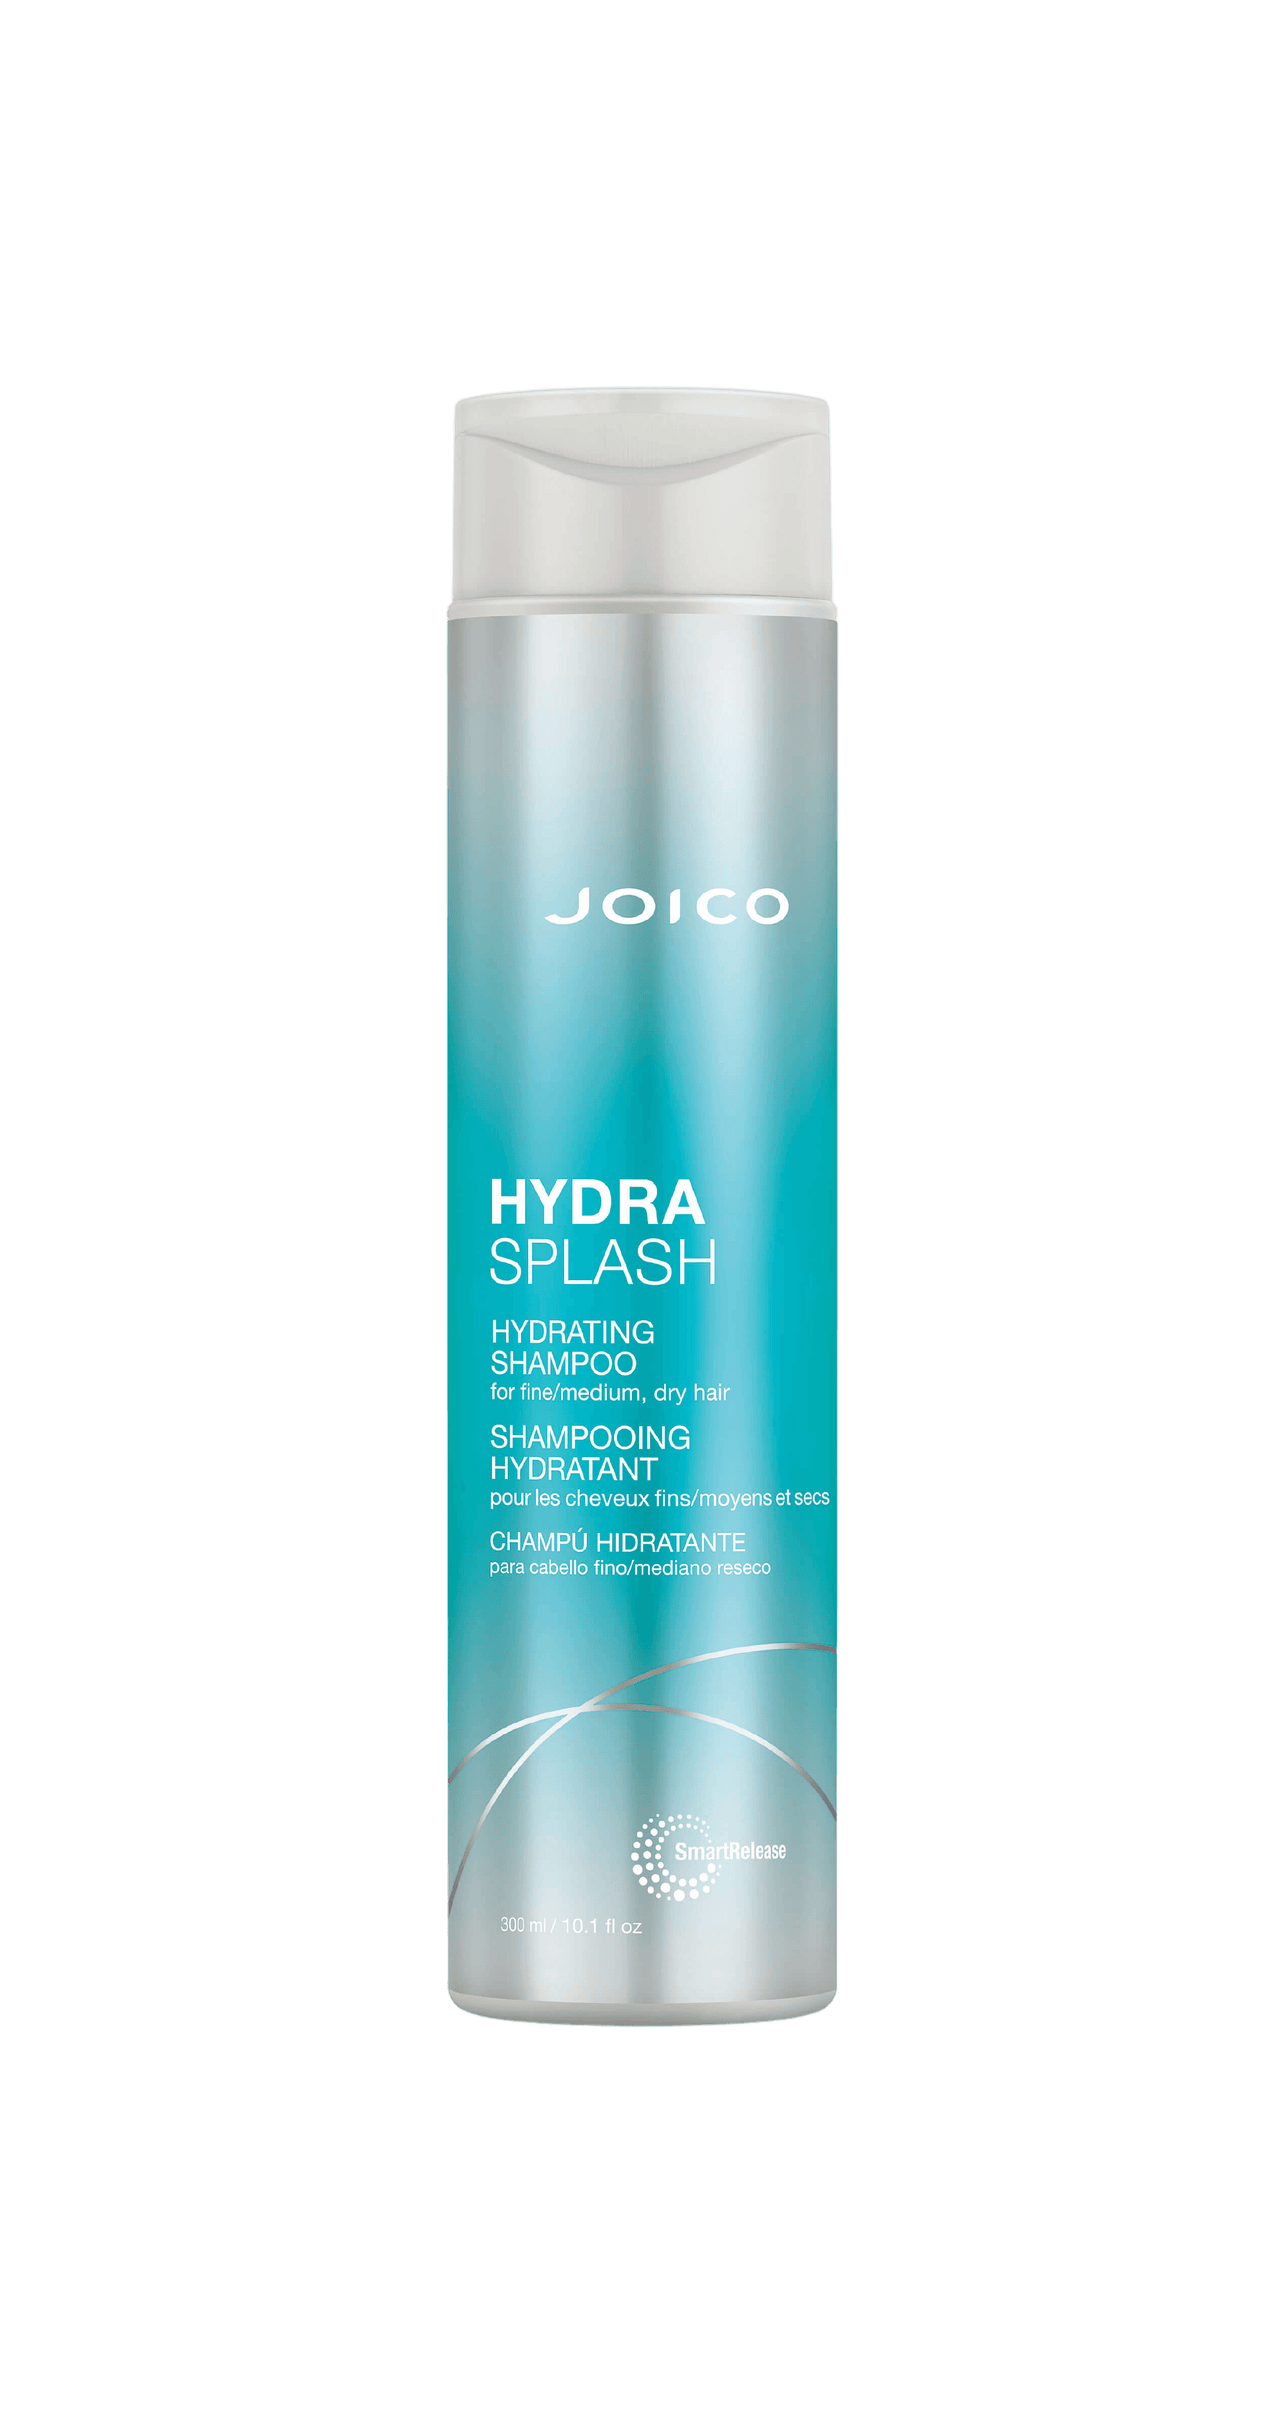 Joico HydraSplash Hydrating Shampoo 300mL Bottle